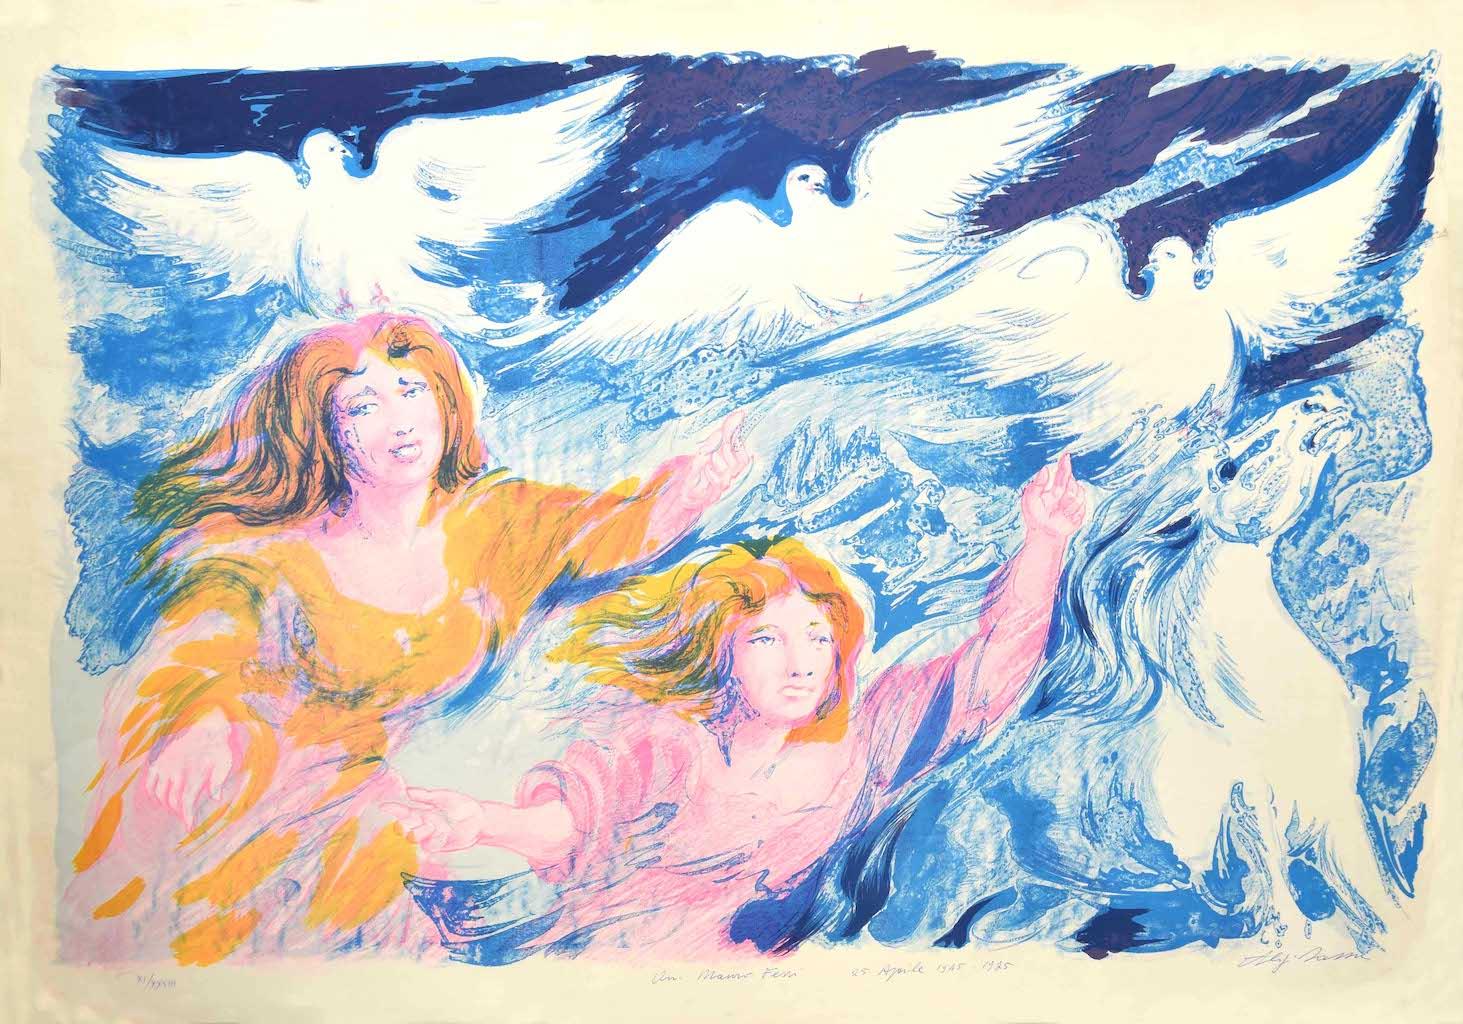 Sirenes est une lithographie originale, réalisée par Aligi Sassu en 1975,

Signé à la main en bas à droite.

L'état de conservation de l'œuvre est bon, à l'exception d'une déchirure dans la marge de droite. Dimension de la feuille : 65 x 92

L'œuvre